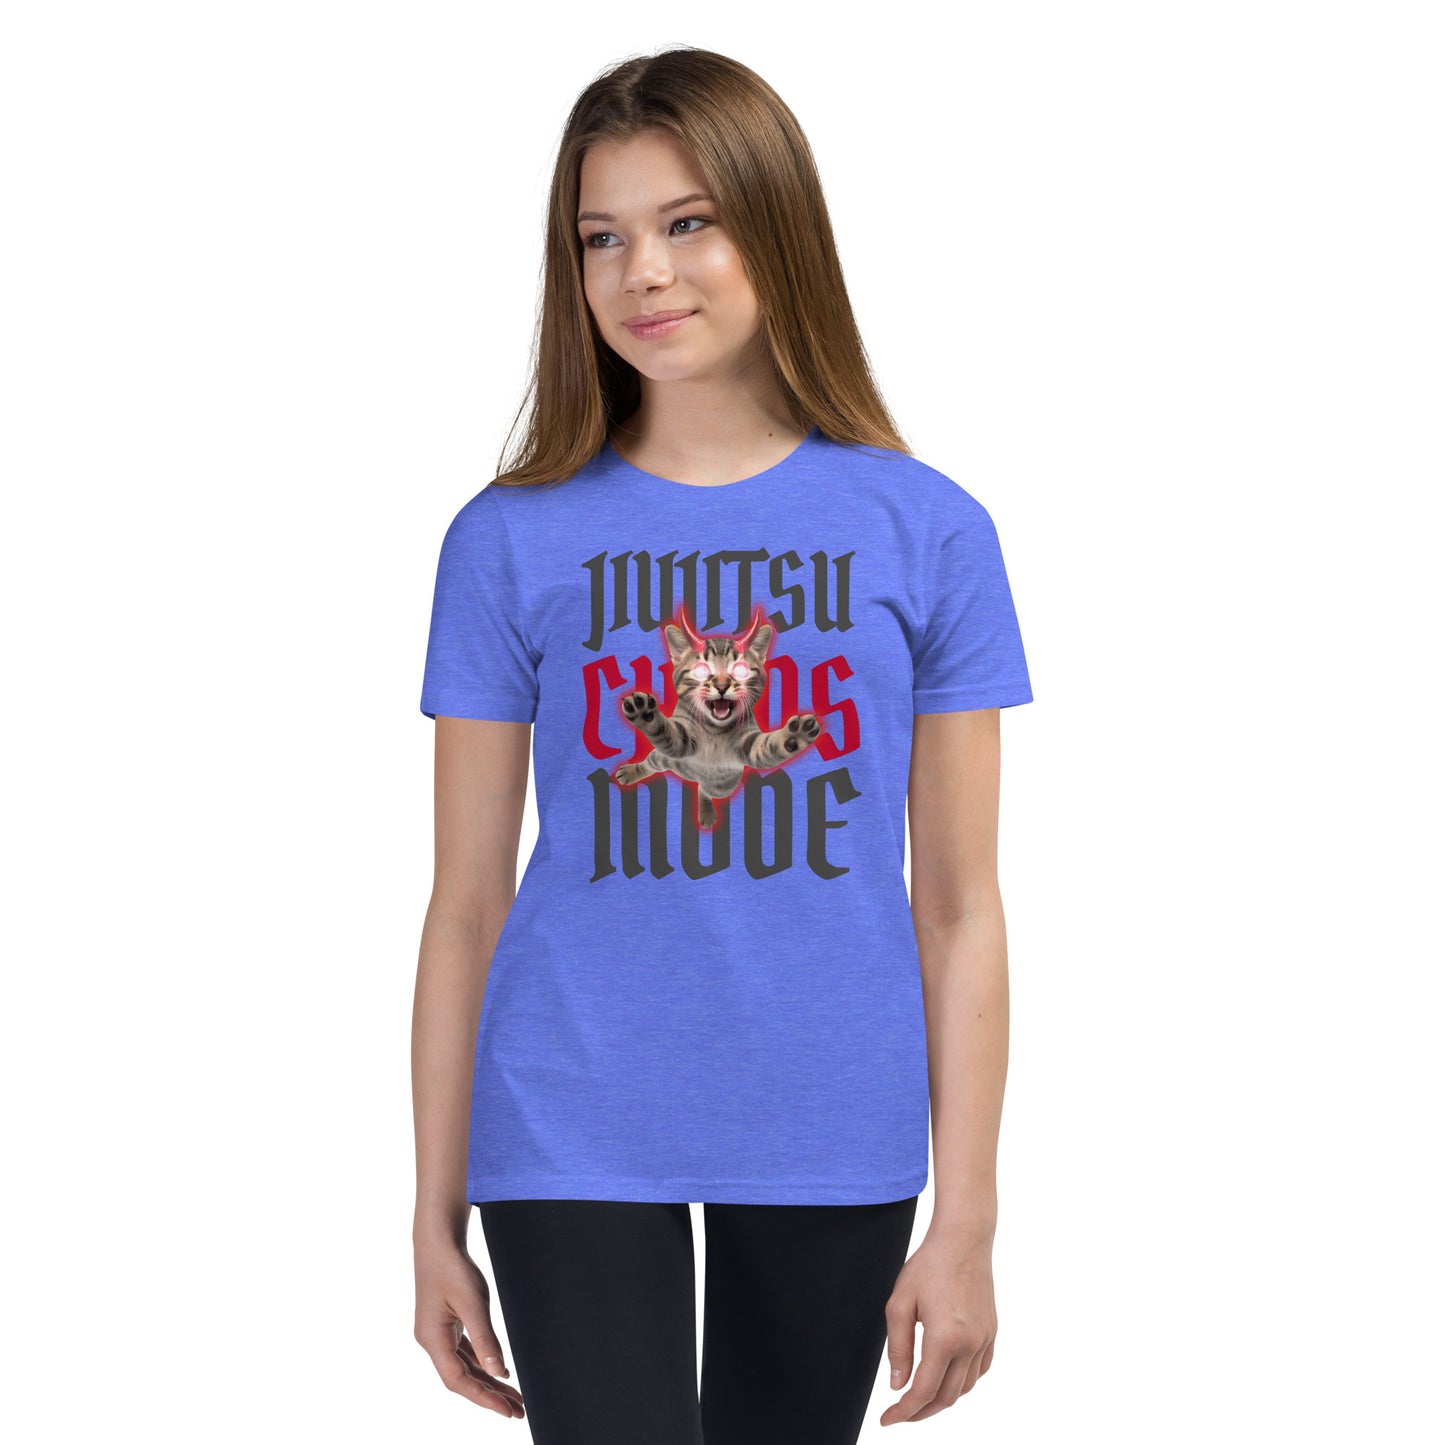 Youth Short Sleeve T-Shirt- Jijitsu Chaos Mode